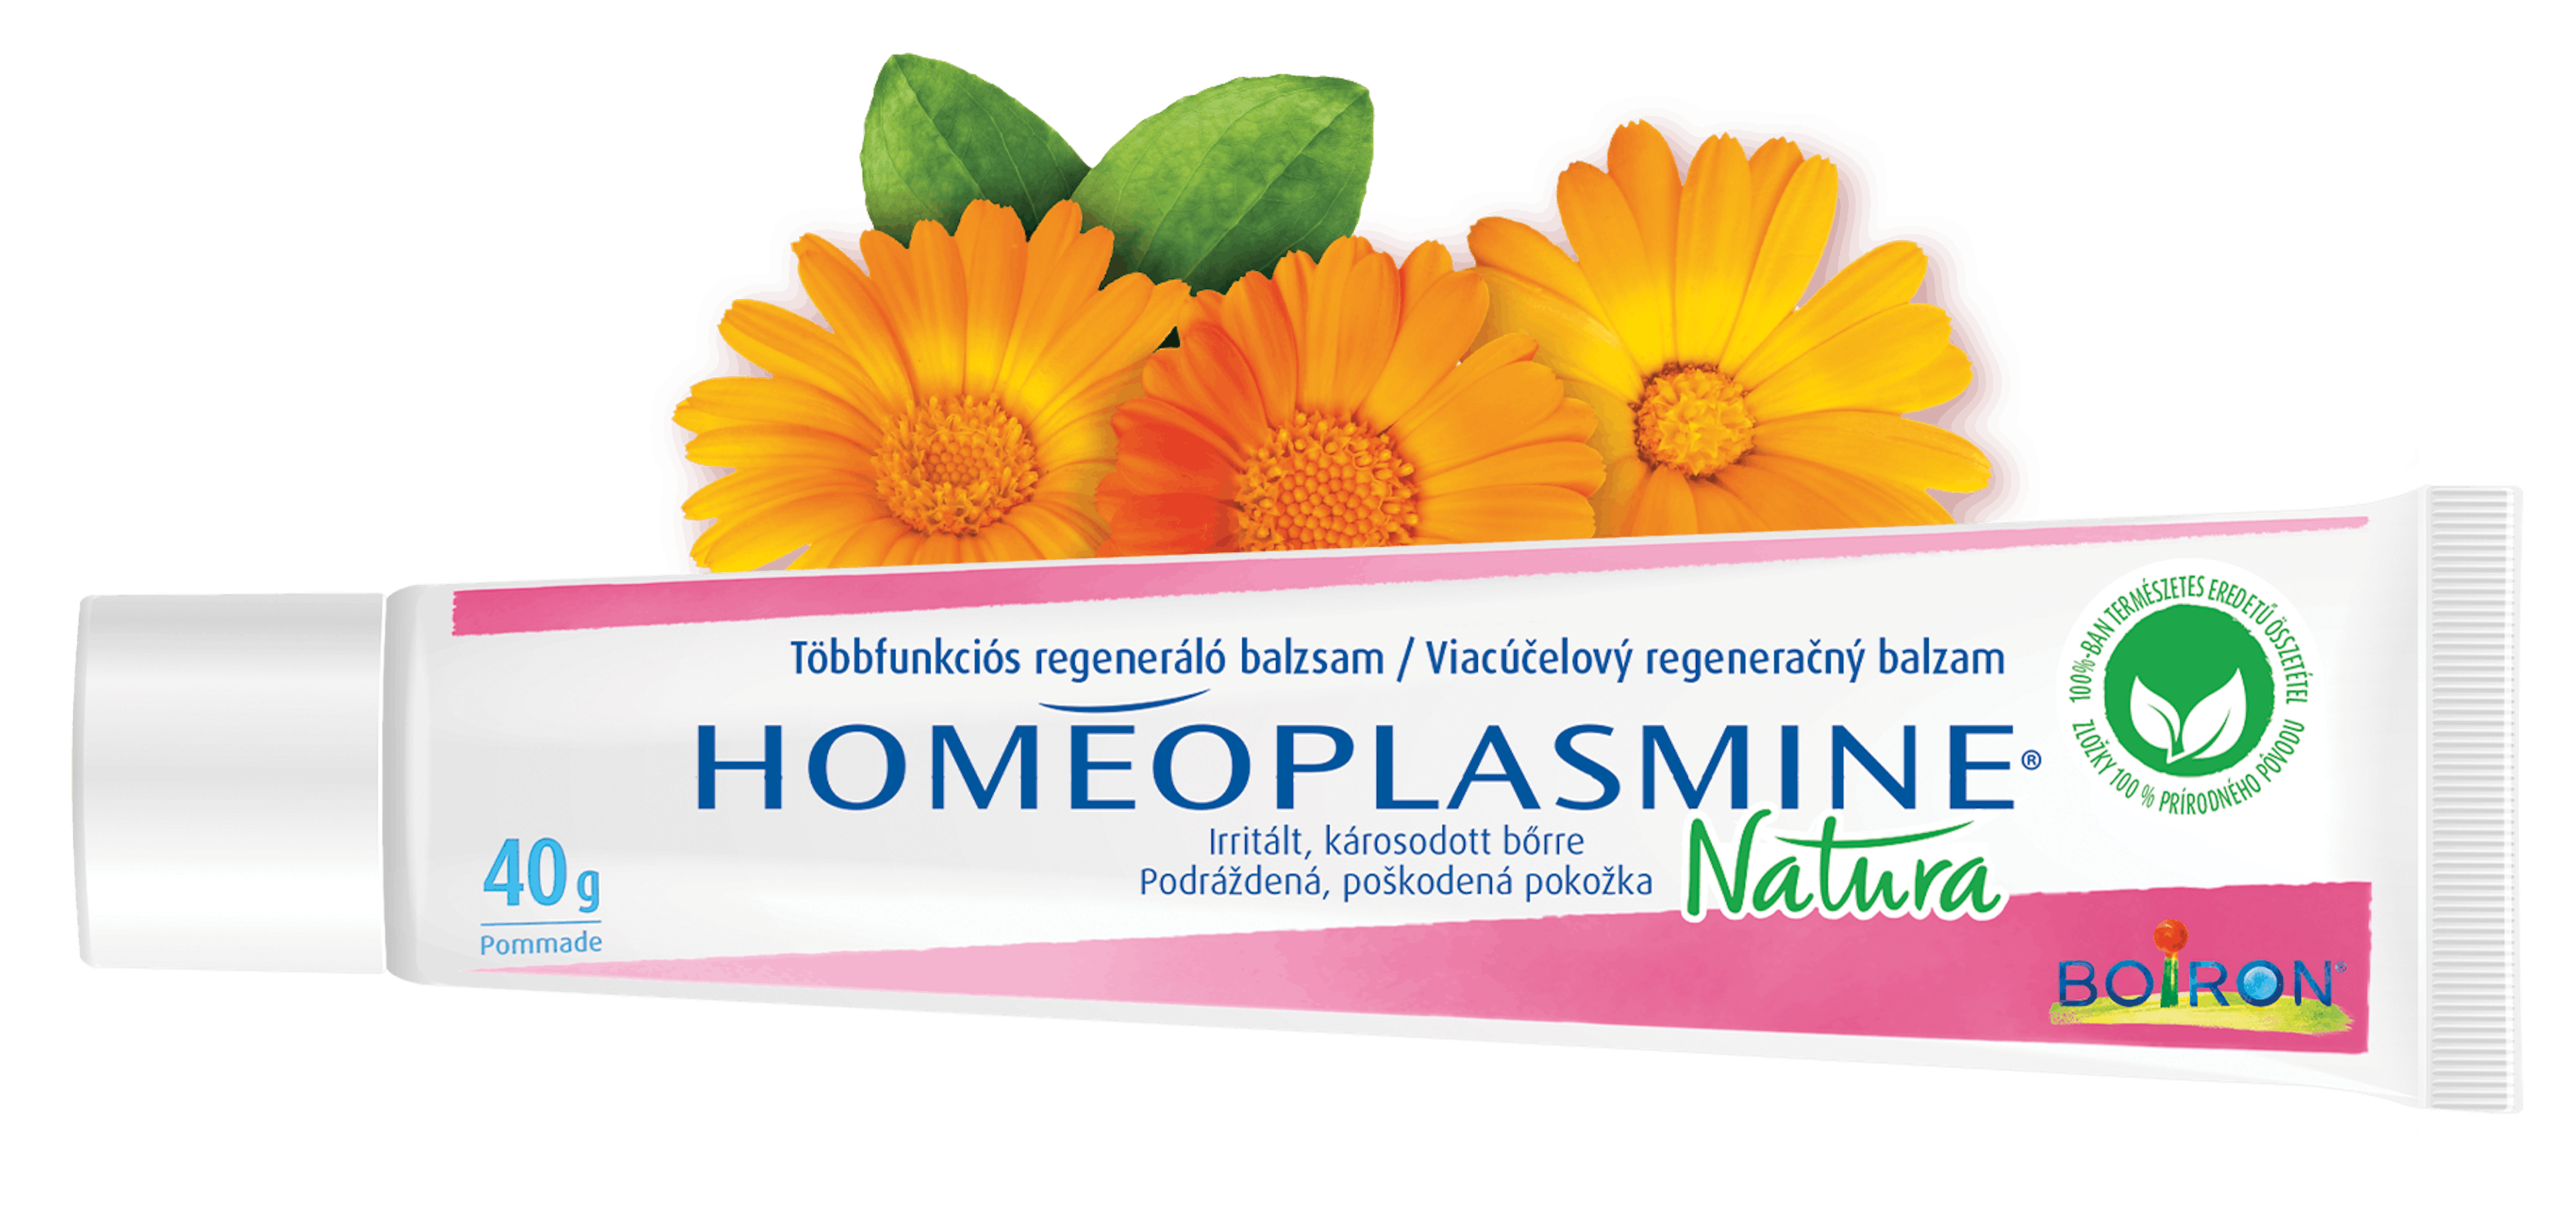 Homeoplasmine natura web herbal